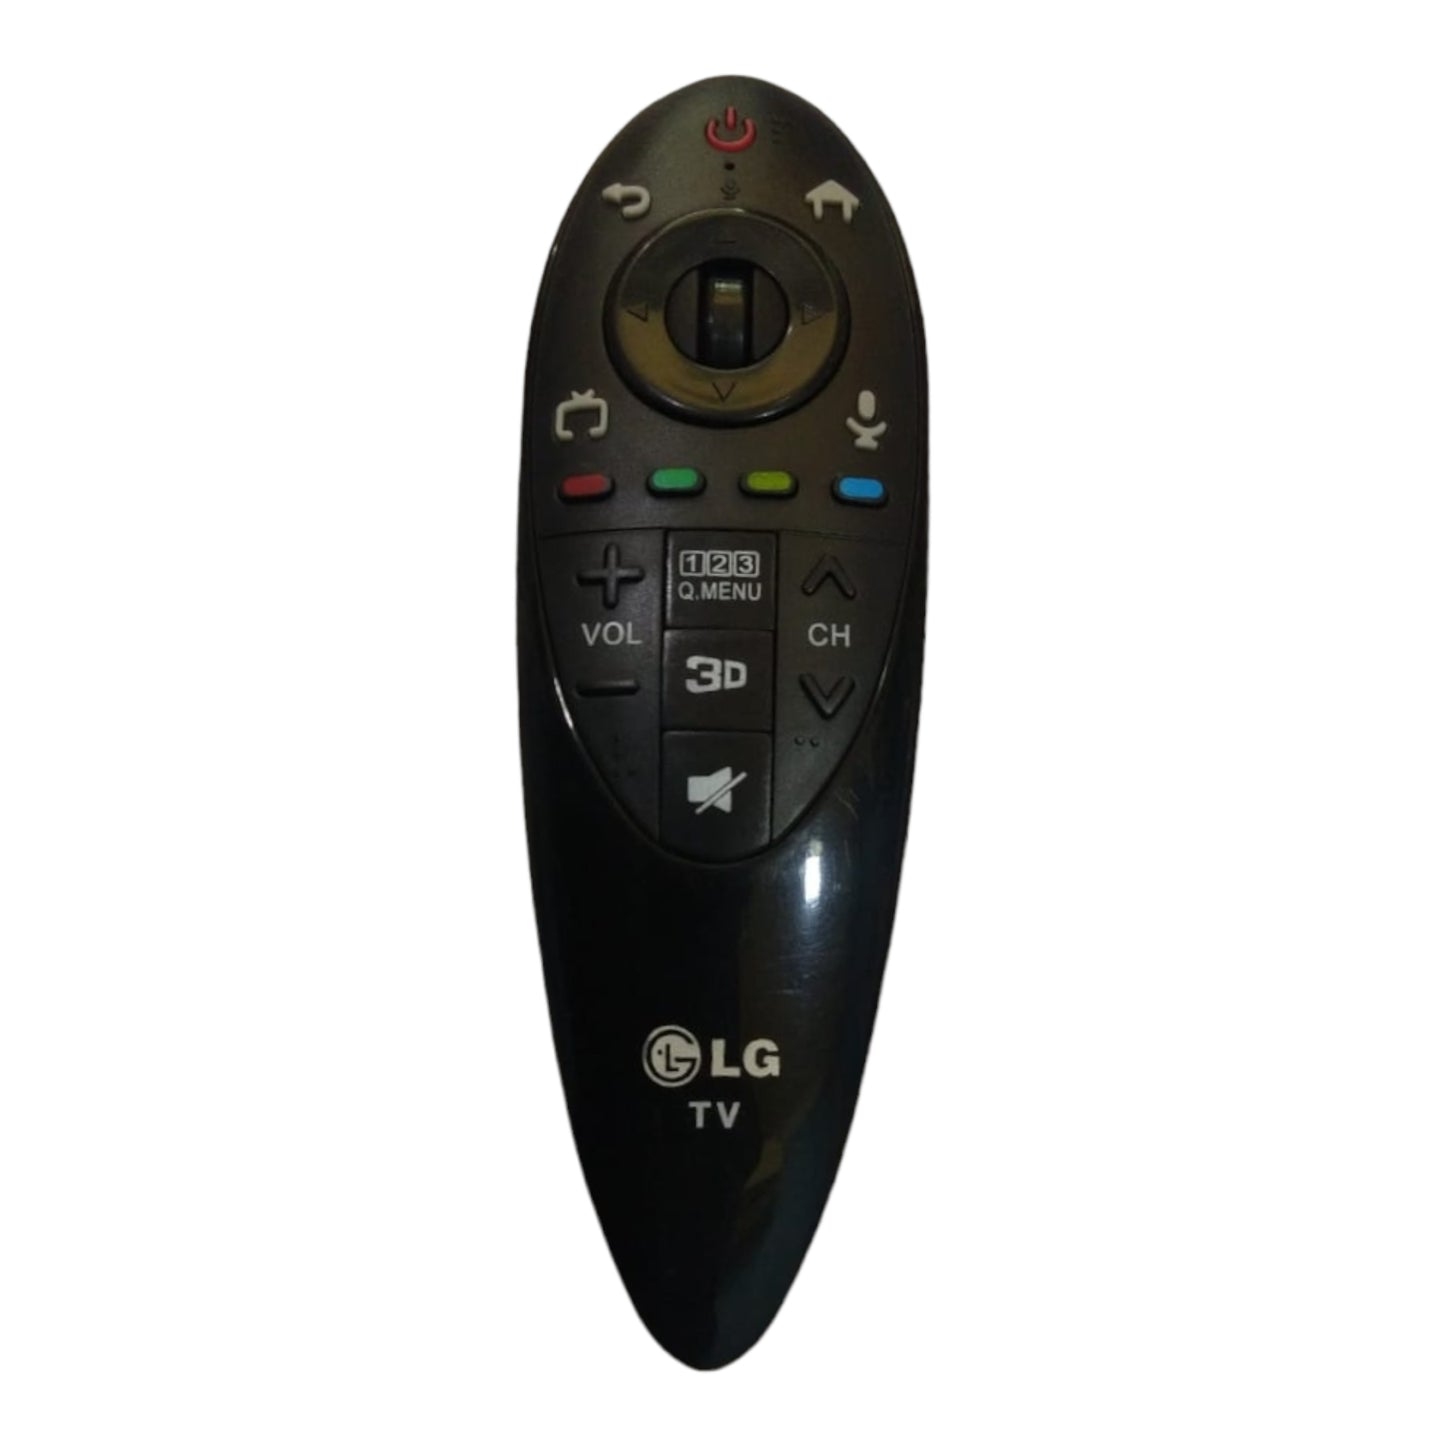 LG magic remote control with voice - Faritha